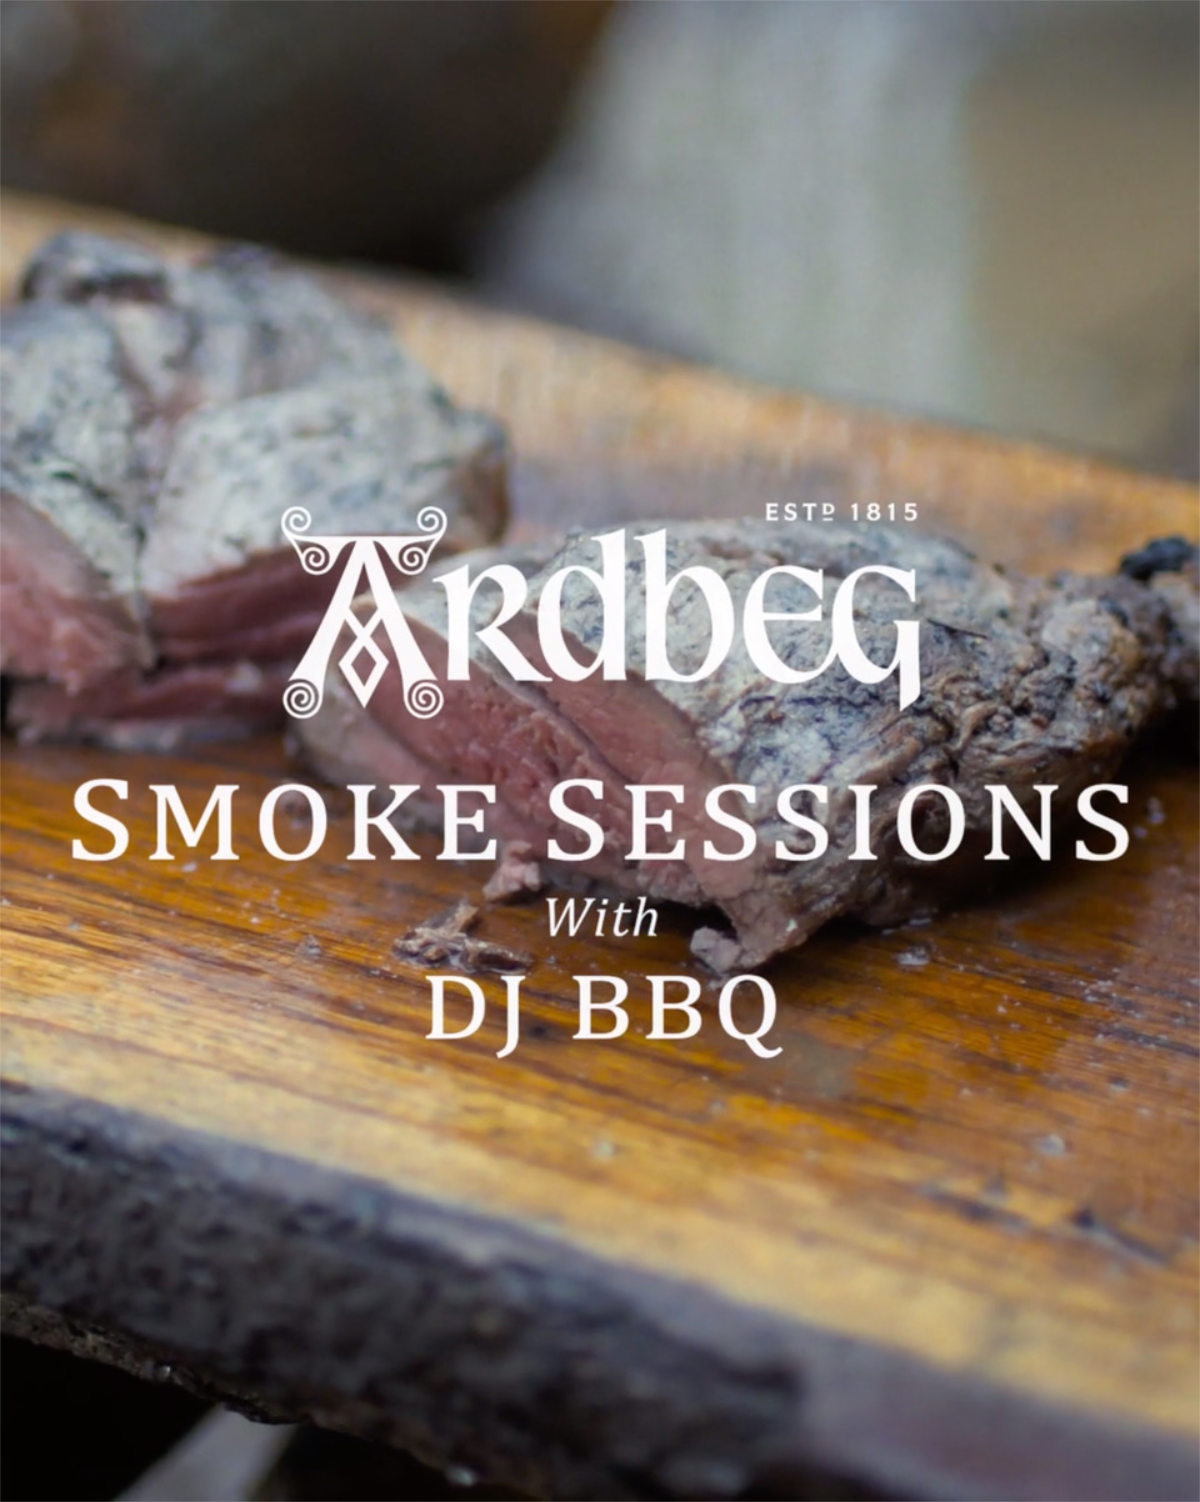 Ardbeg und DJ BBQ drehen diesen Sommer die Hitze auf für die Lancierung der Ardbeg Smoke Sessions